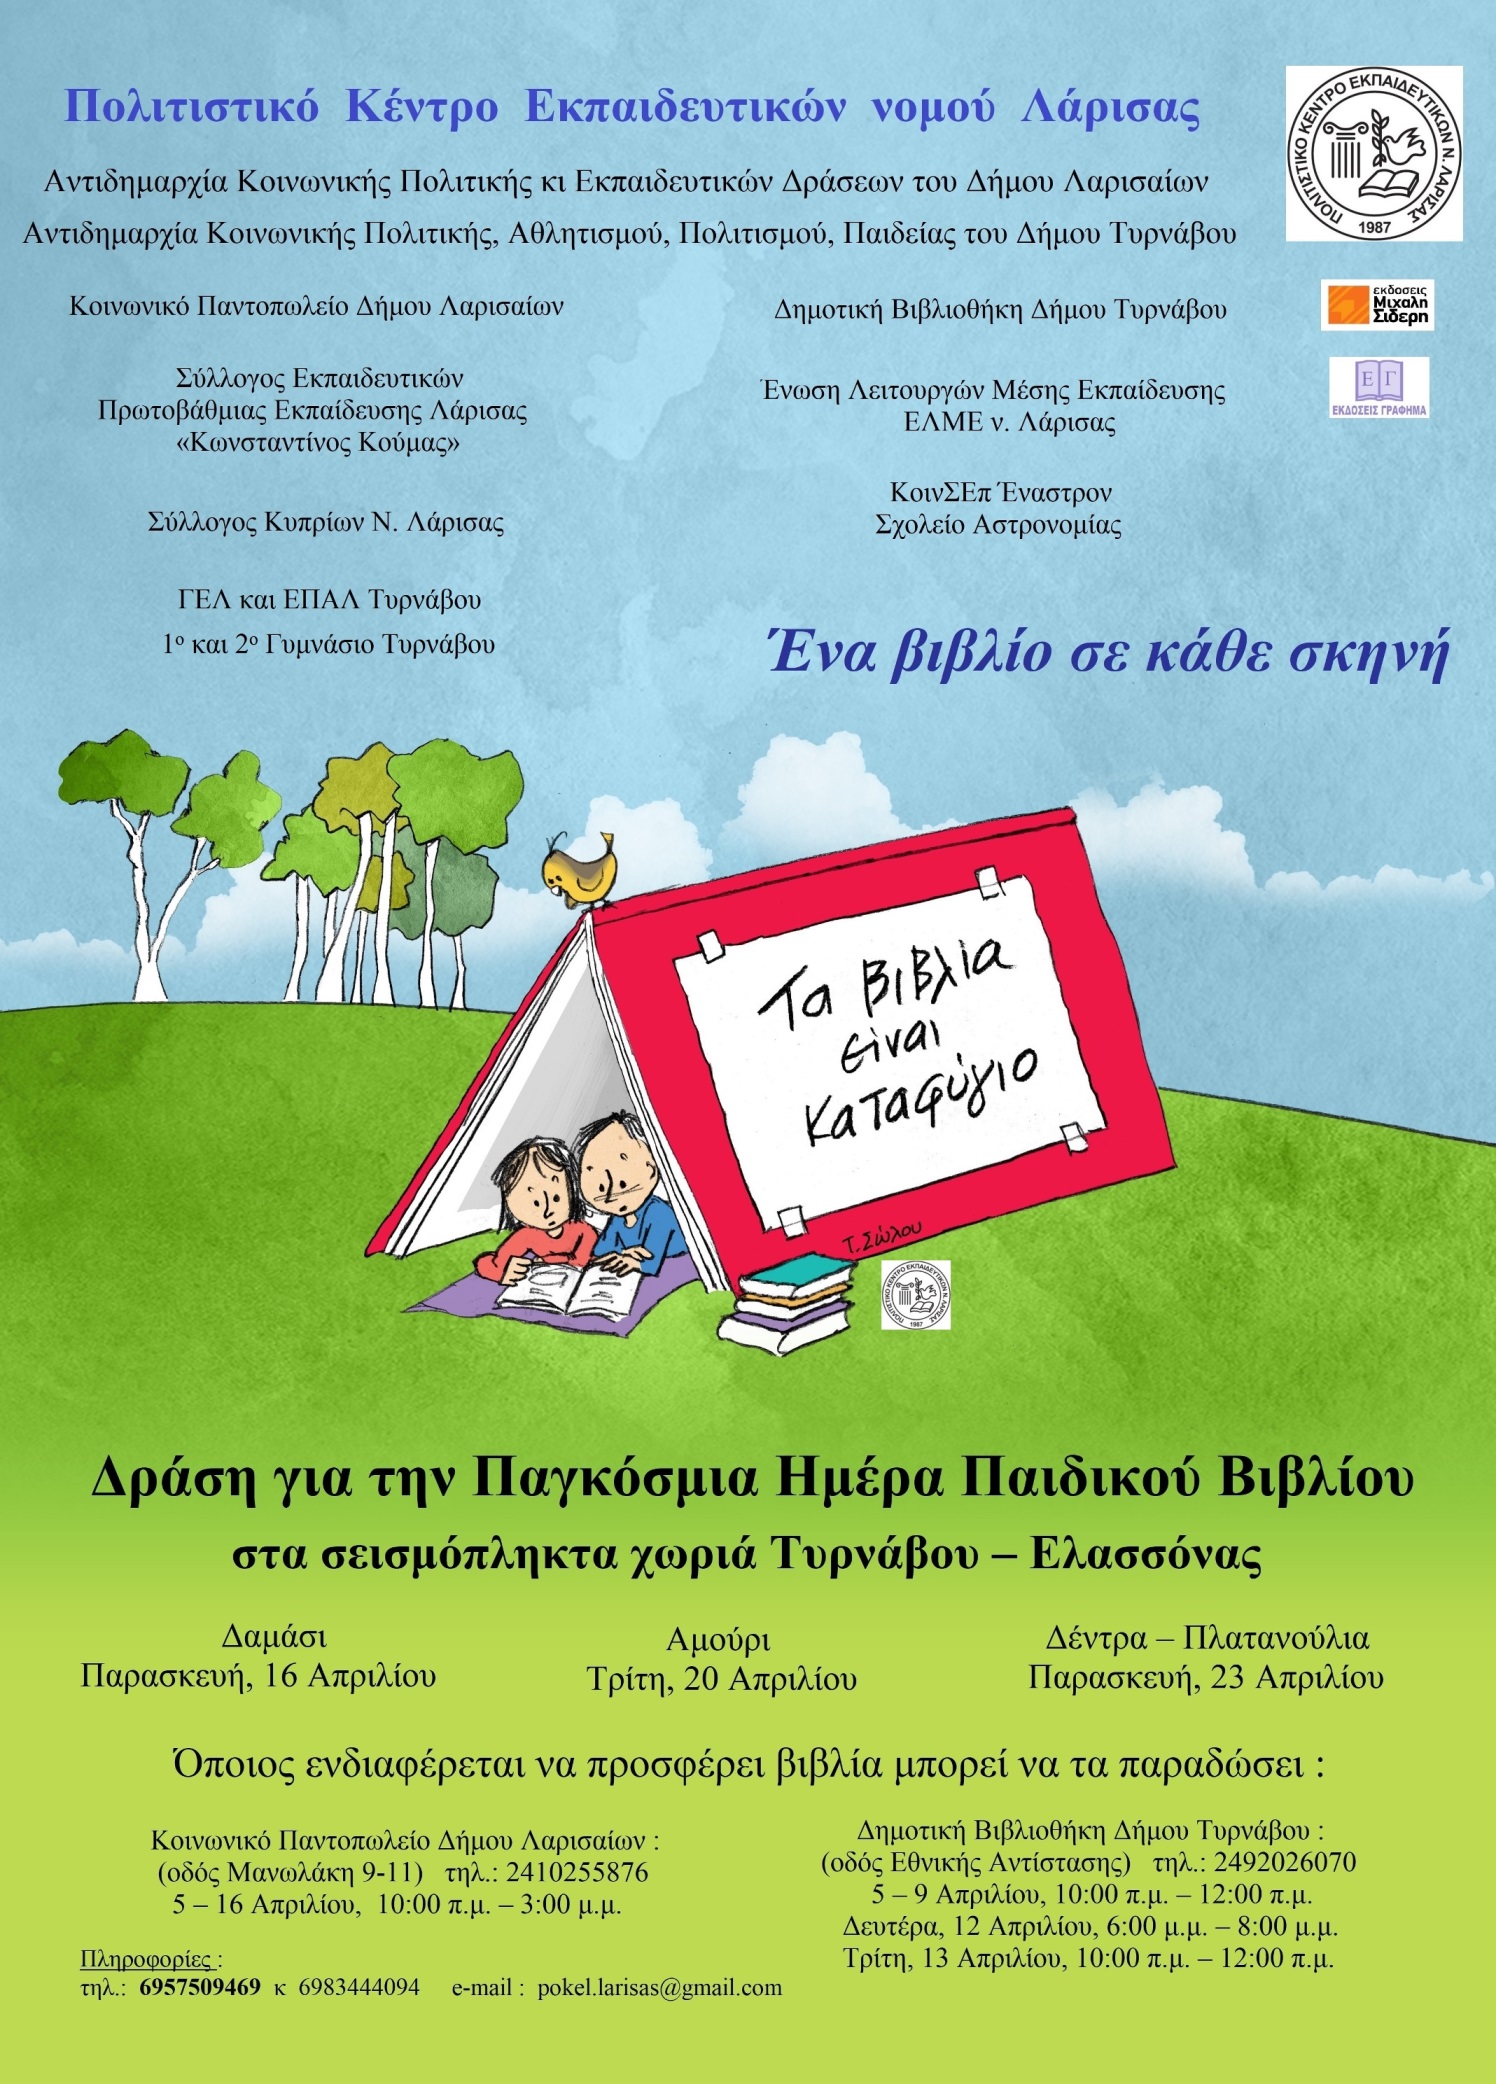 "Ένα βιβλίο σε κάθε σκηνή", για τα σεισμόπληκτα χωριά των Δήμων Τυρνάβου και Ελασσόνας 